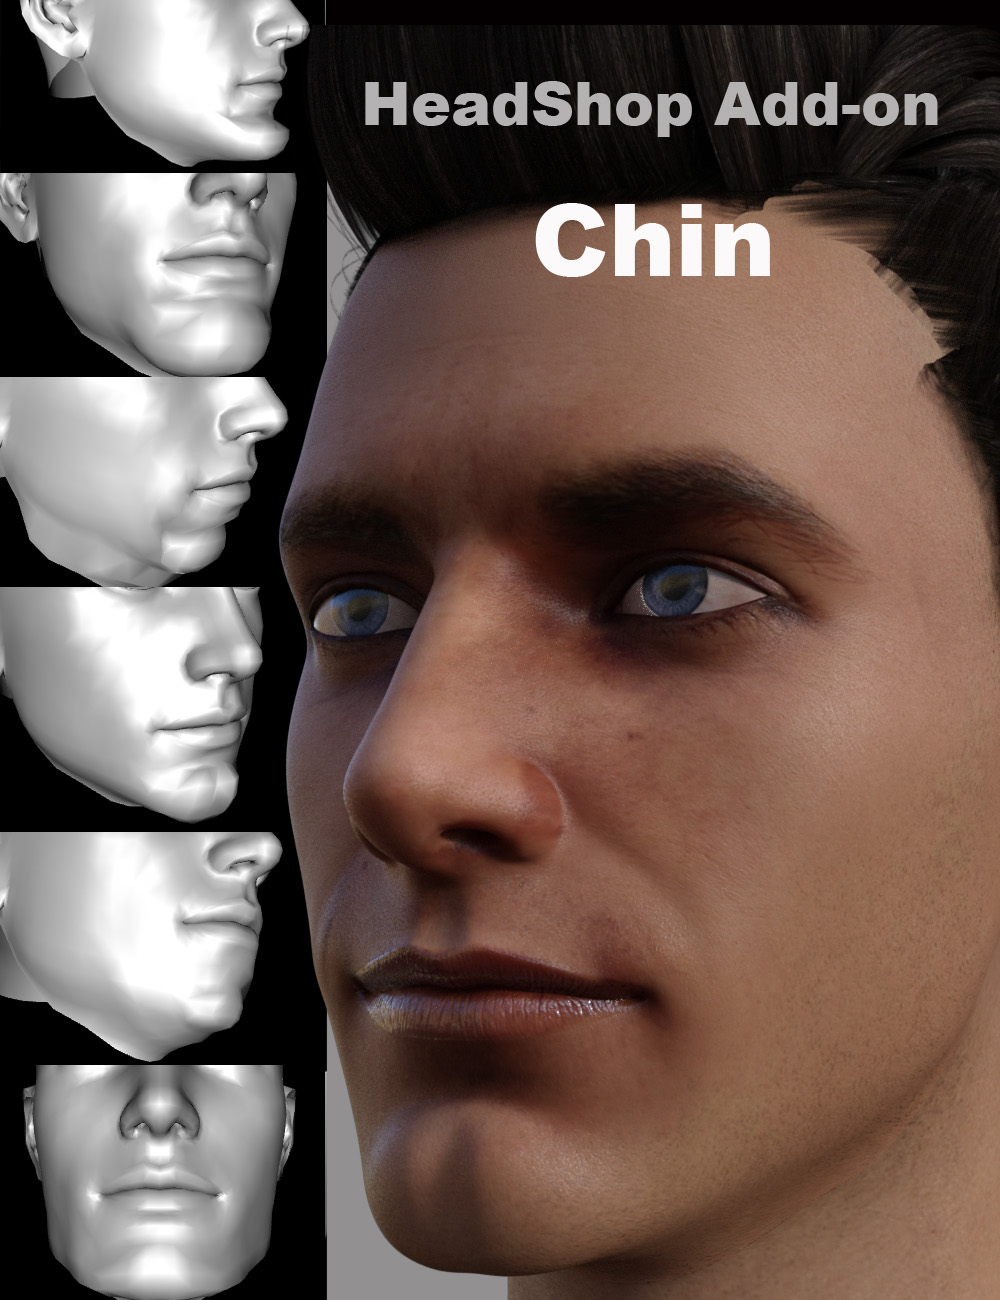 HeadShop - Chin Add-On by: Abalone LLC, 3D Models by Daz 3D